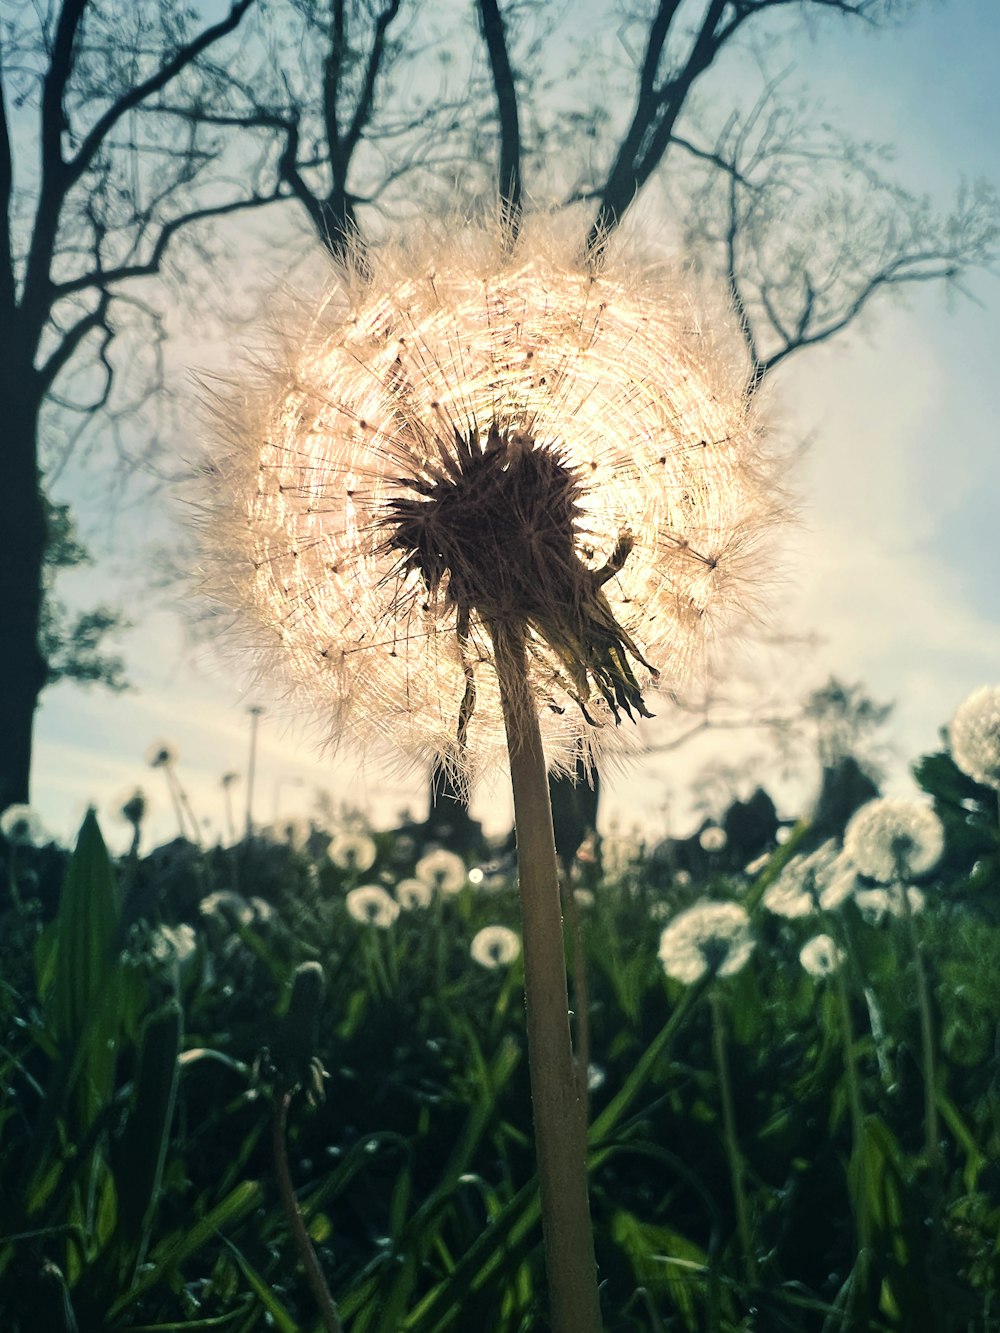 a dandelion blowing in the wind in a field